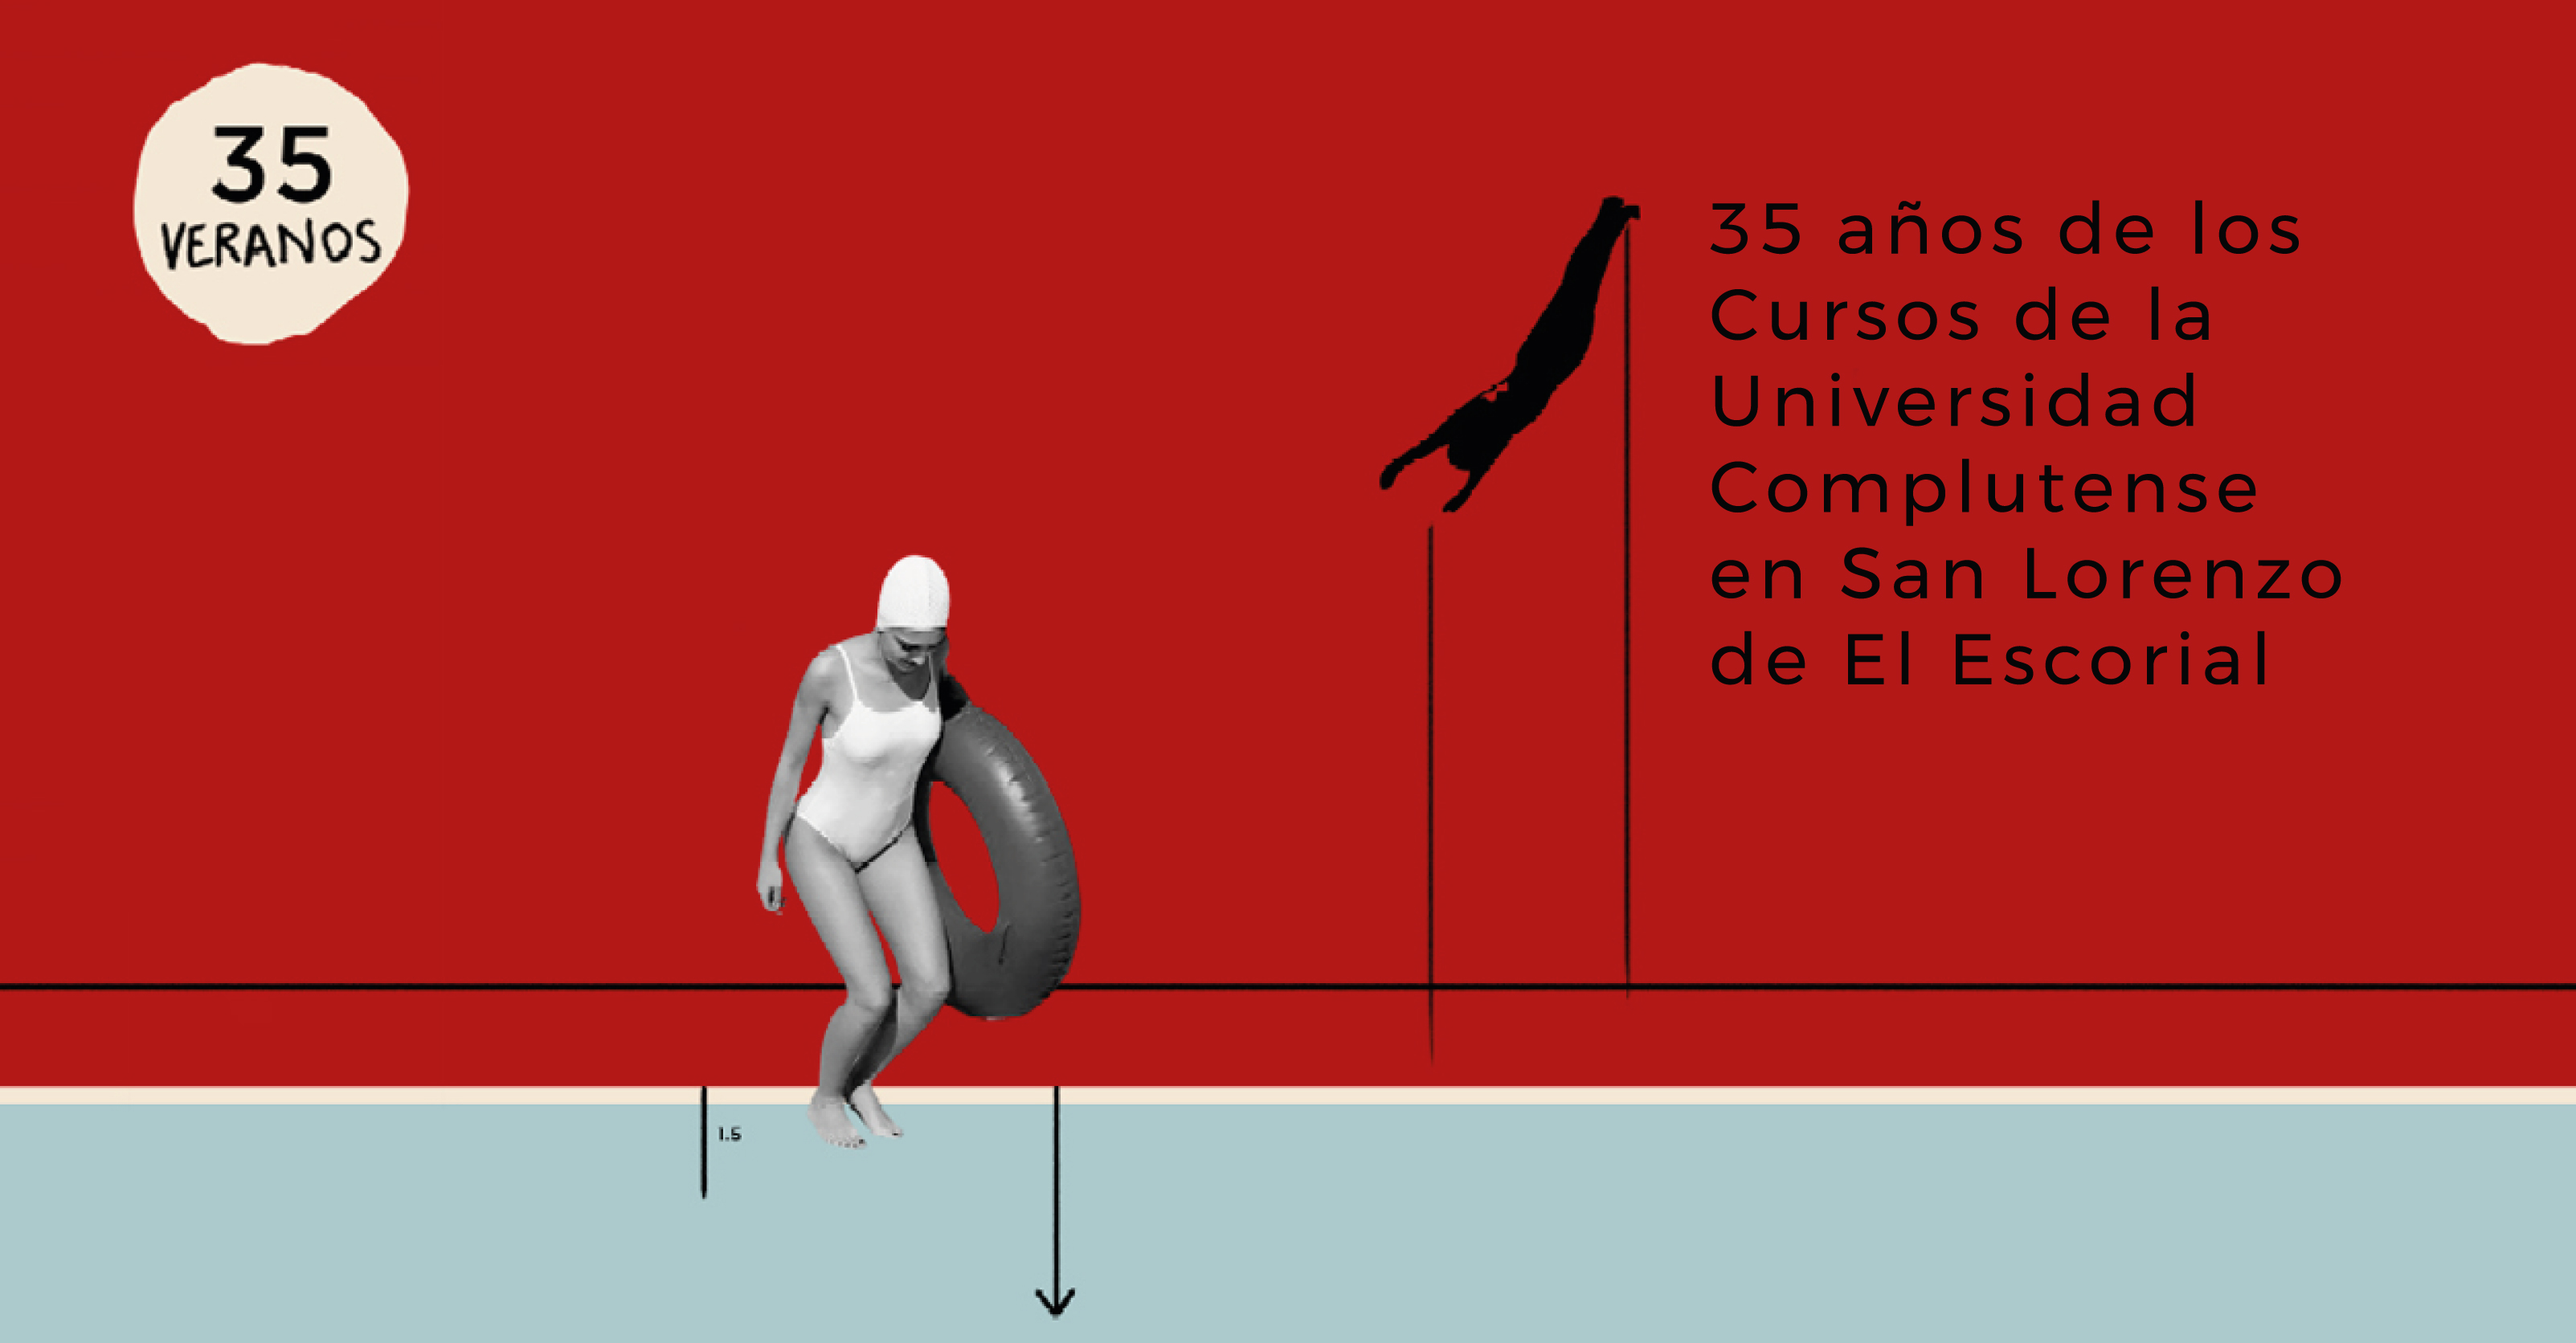 35 veranos, 35 años de los Cursos de la Universidad Complutense en San Lorenzo de El Escorial